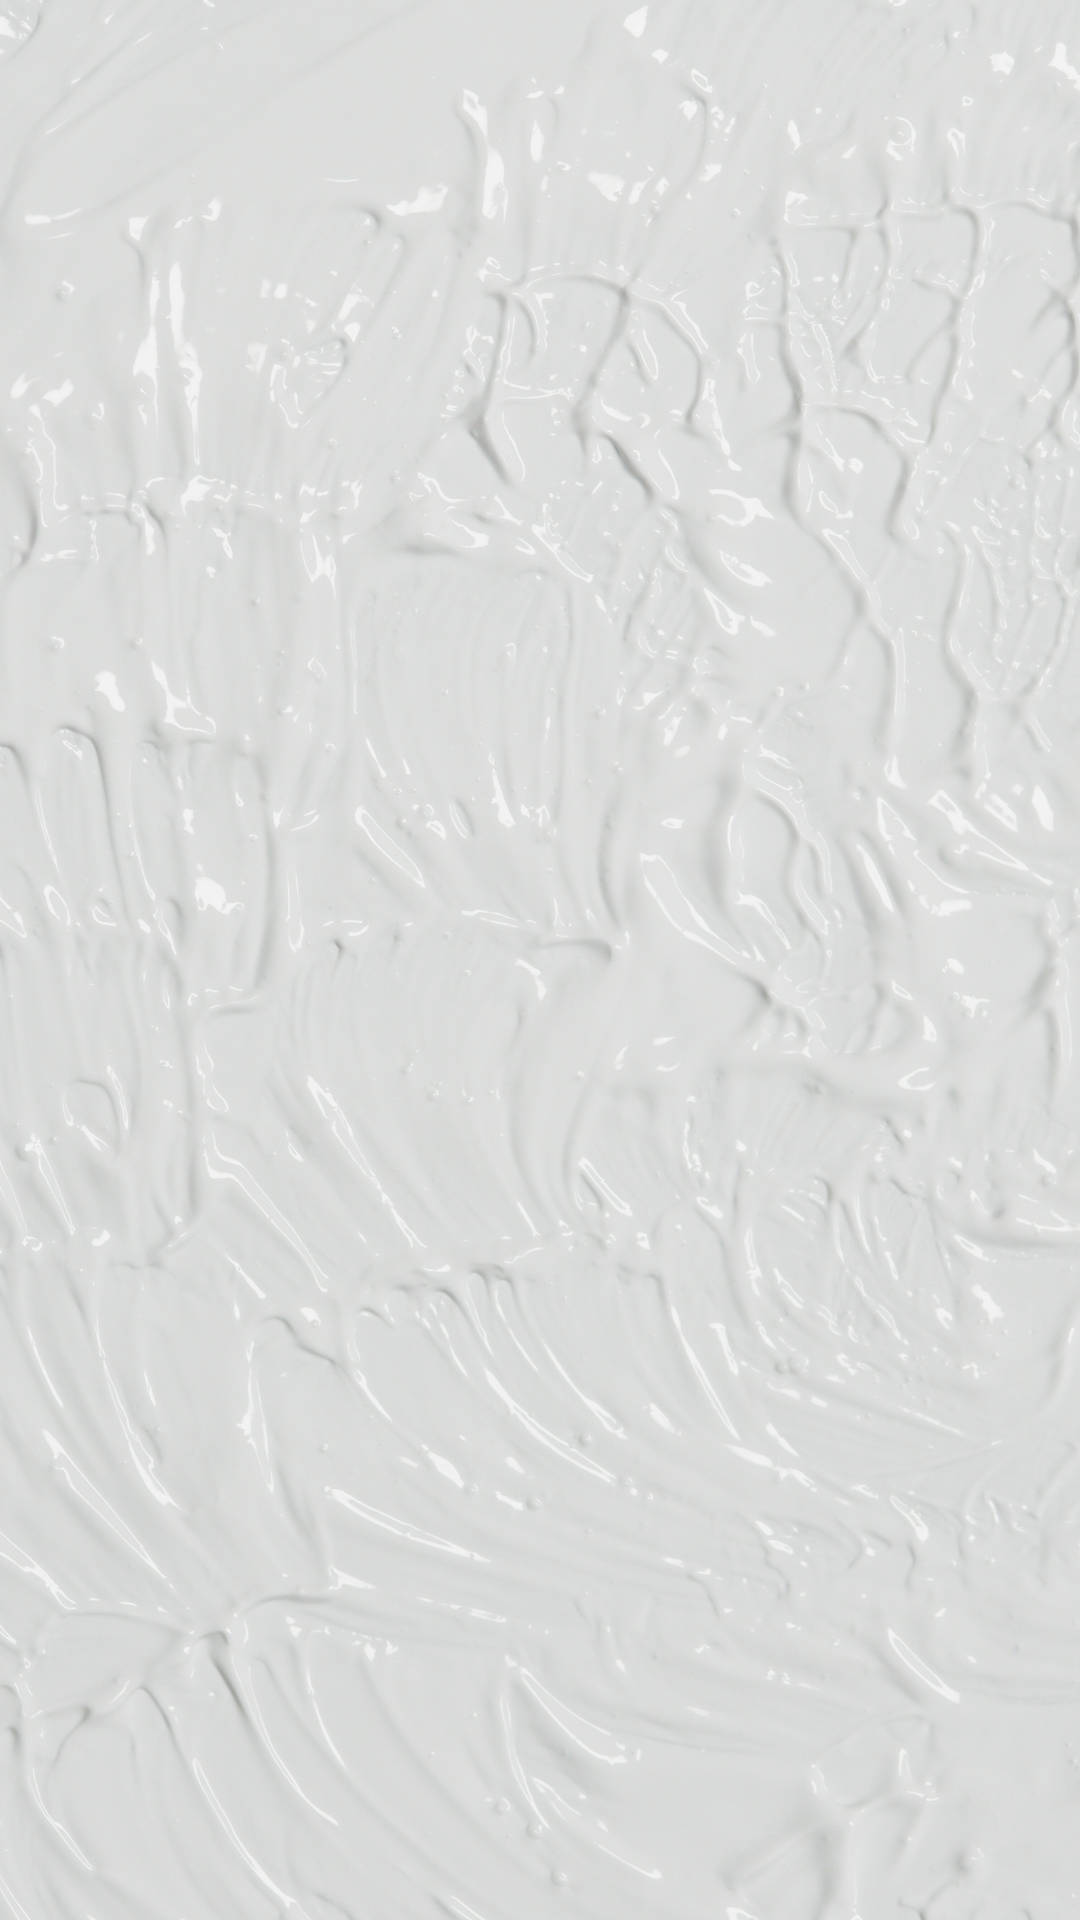 Pure White Concrete Wall Background